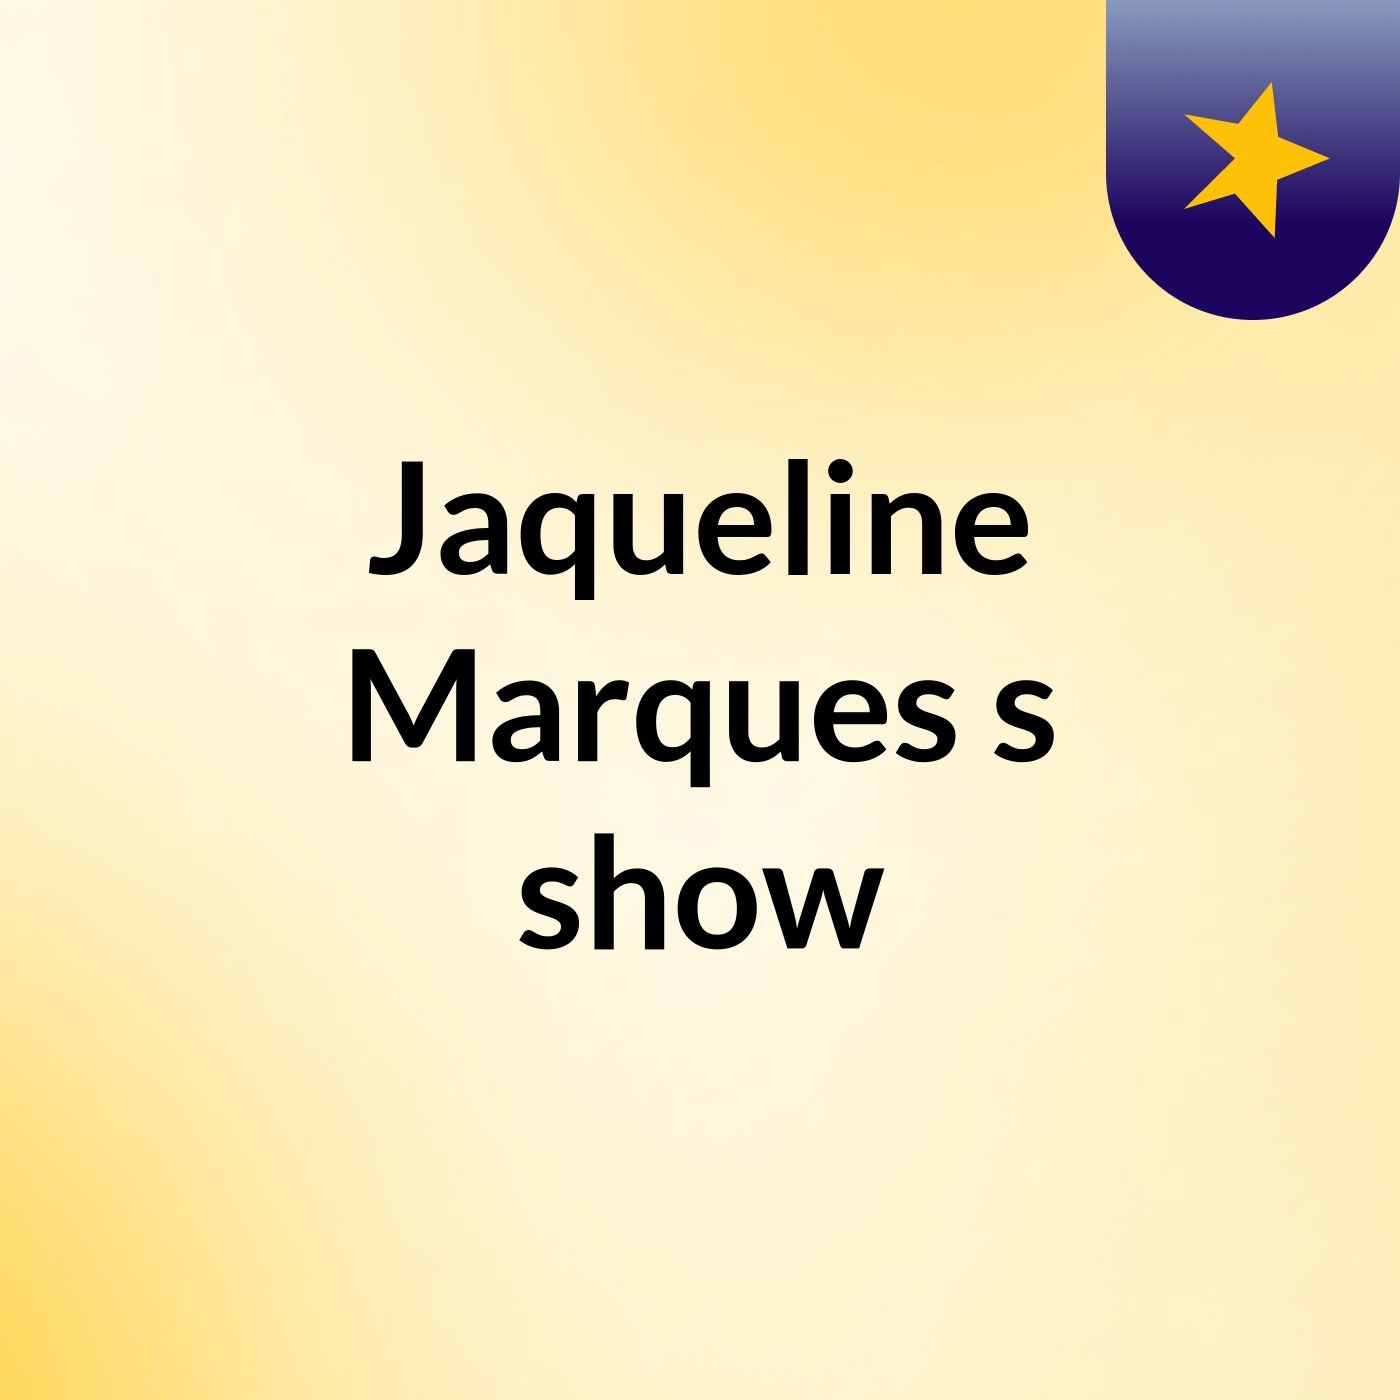 Jaqueline Marques's show